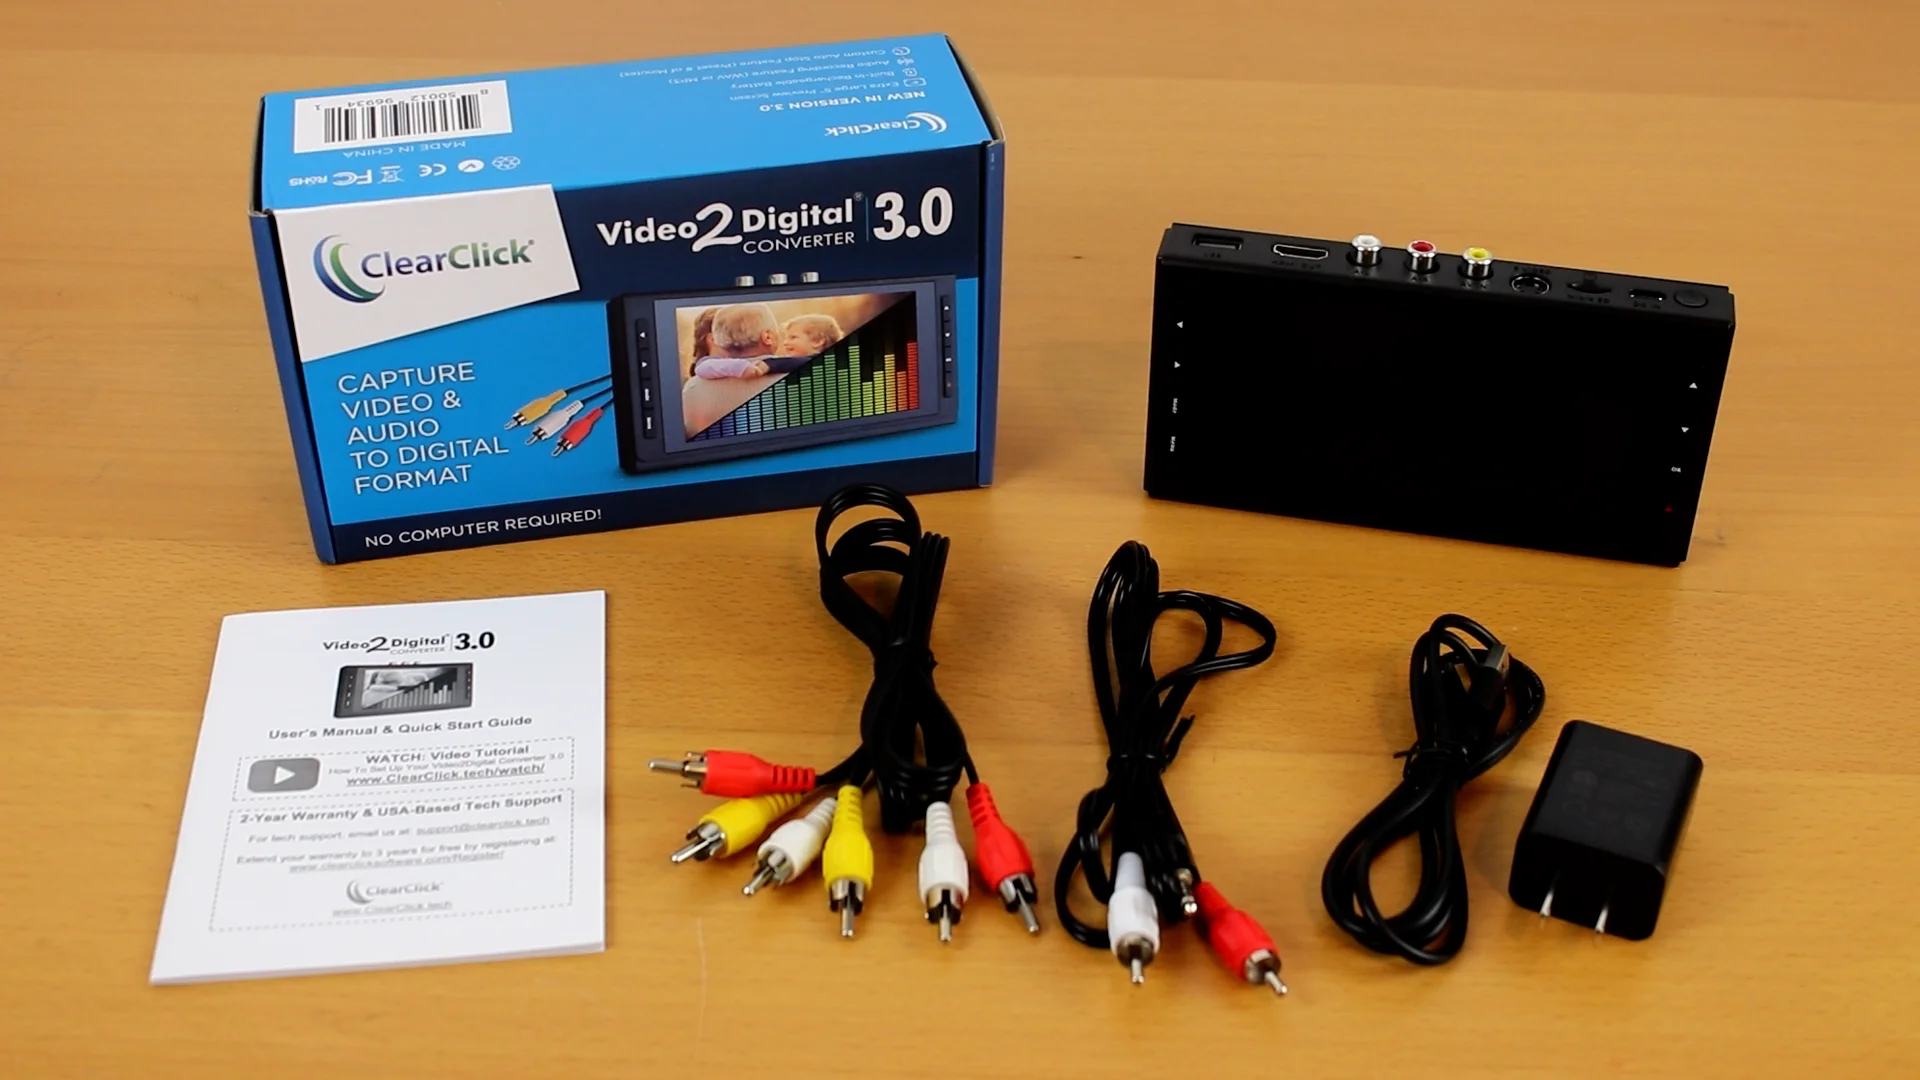 Video2Digital® Converter 3.0 (Third Generation)